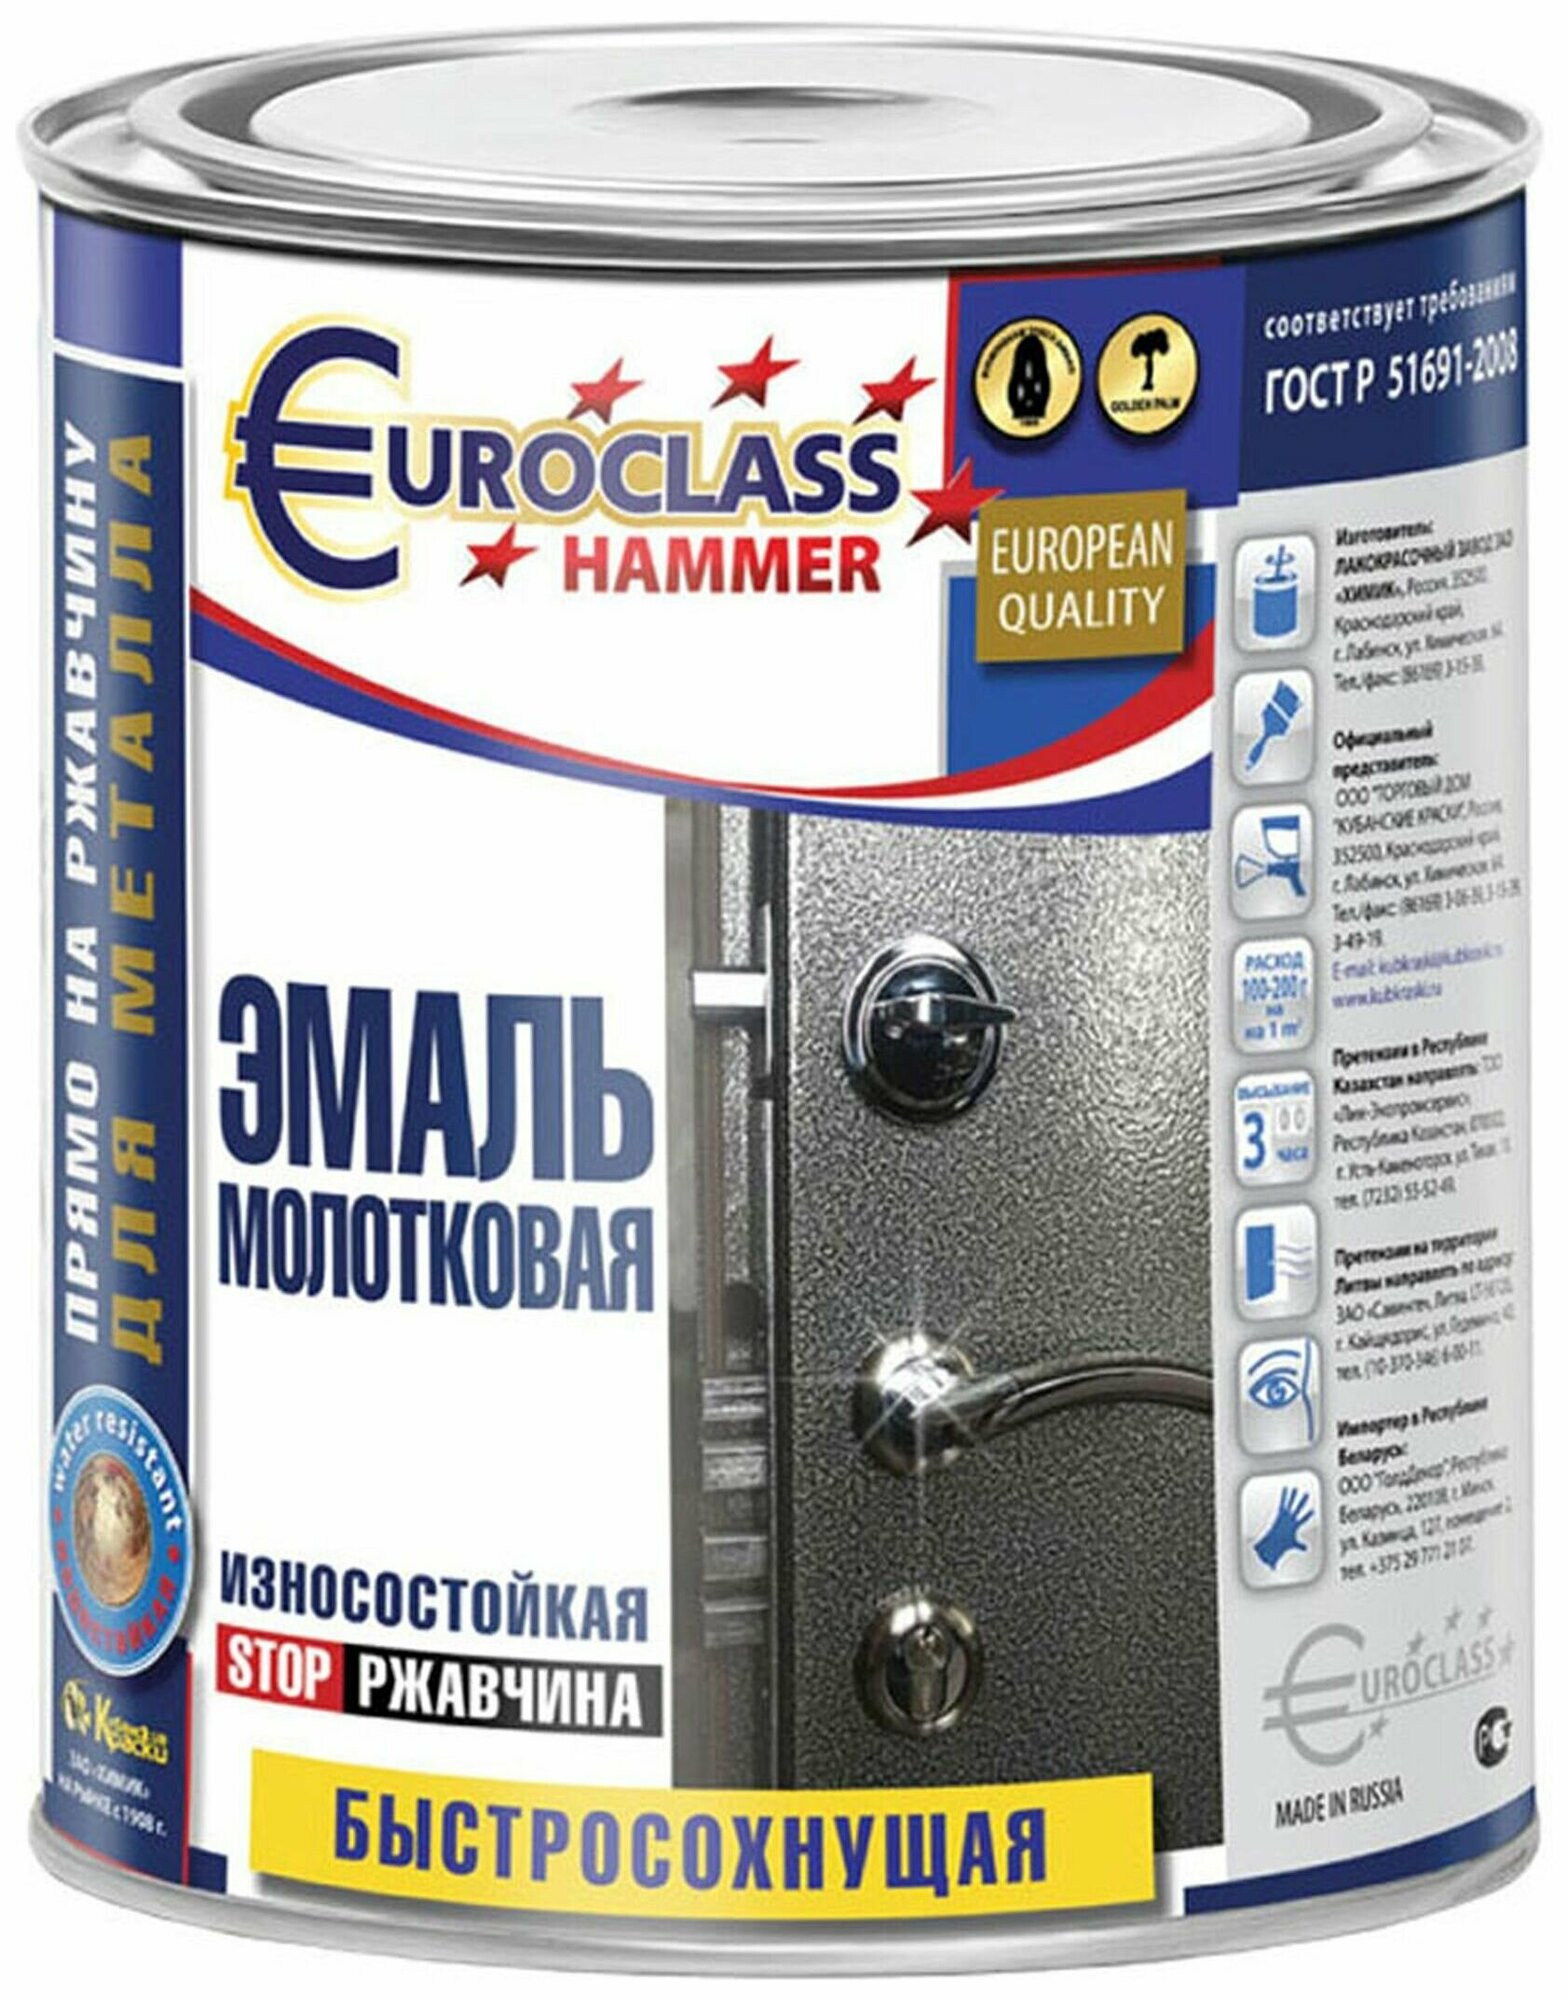 Эмаль Euroclass с молотковым эффектом полуматовая серебристая 2,5 кг